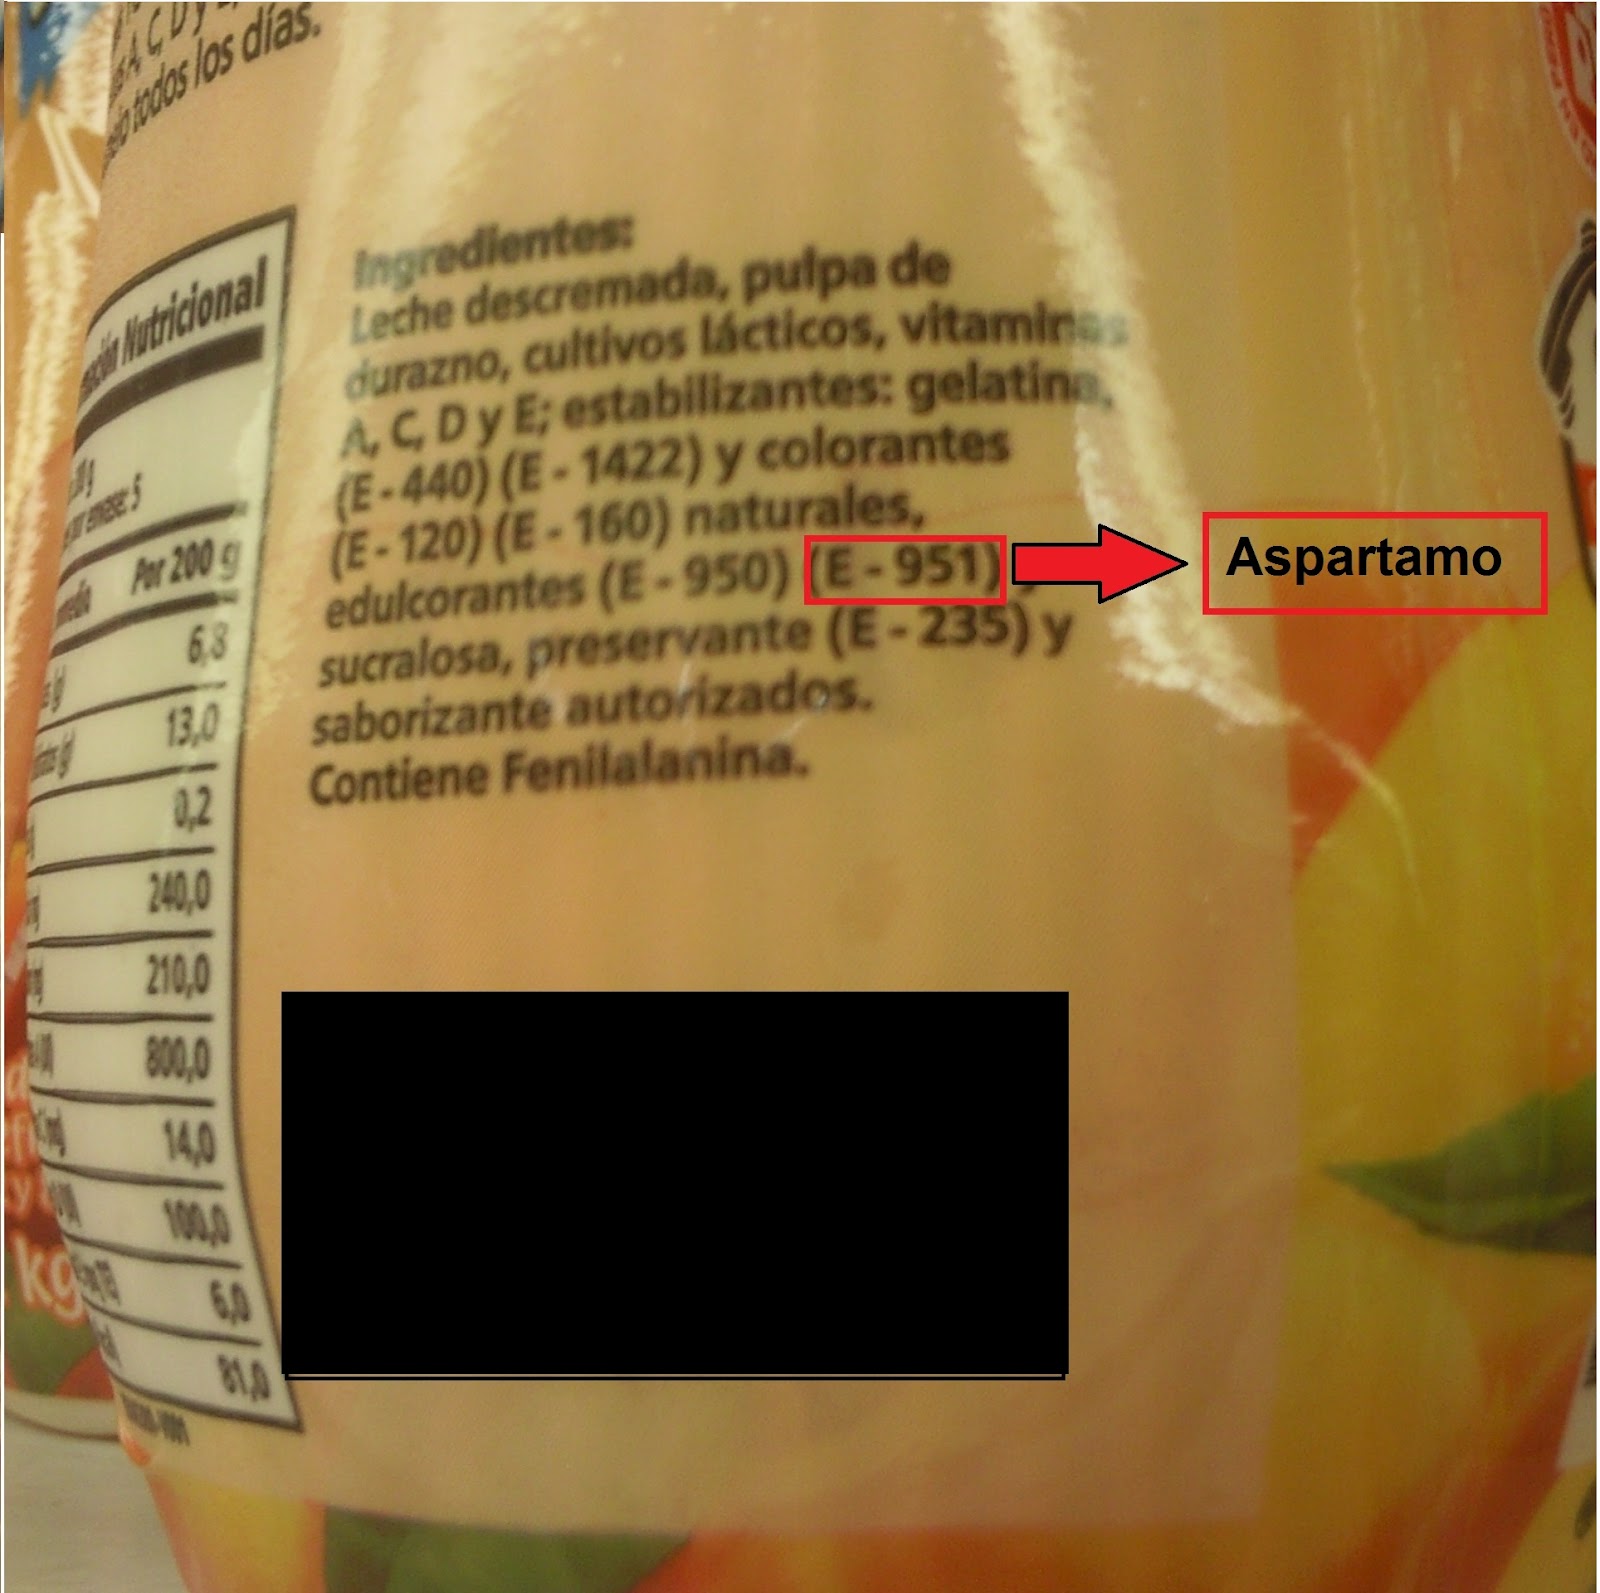 etiqueta aspartamo E-951